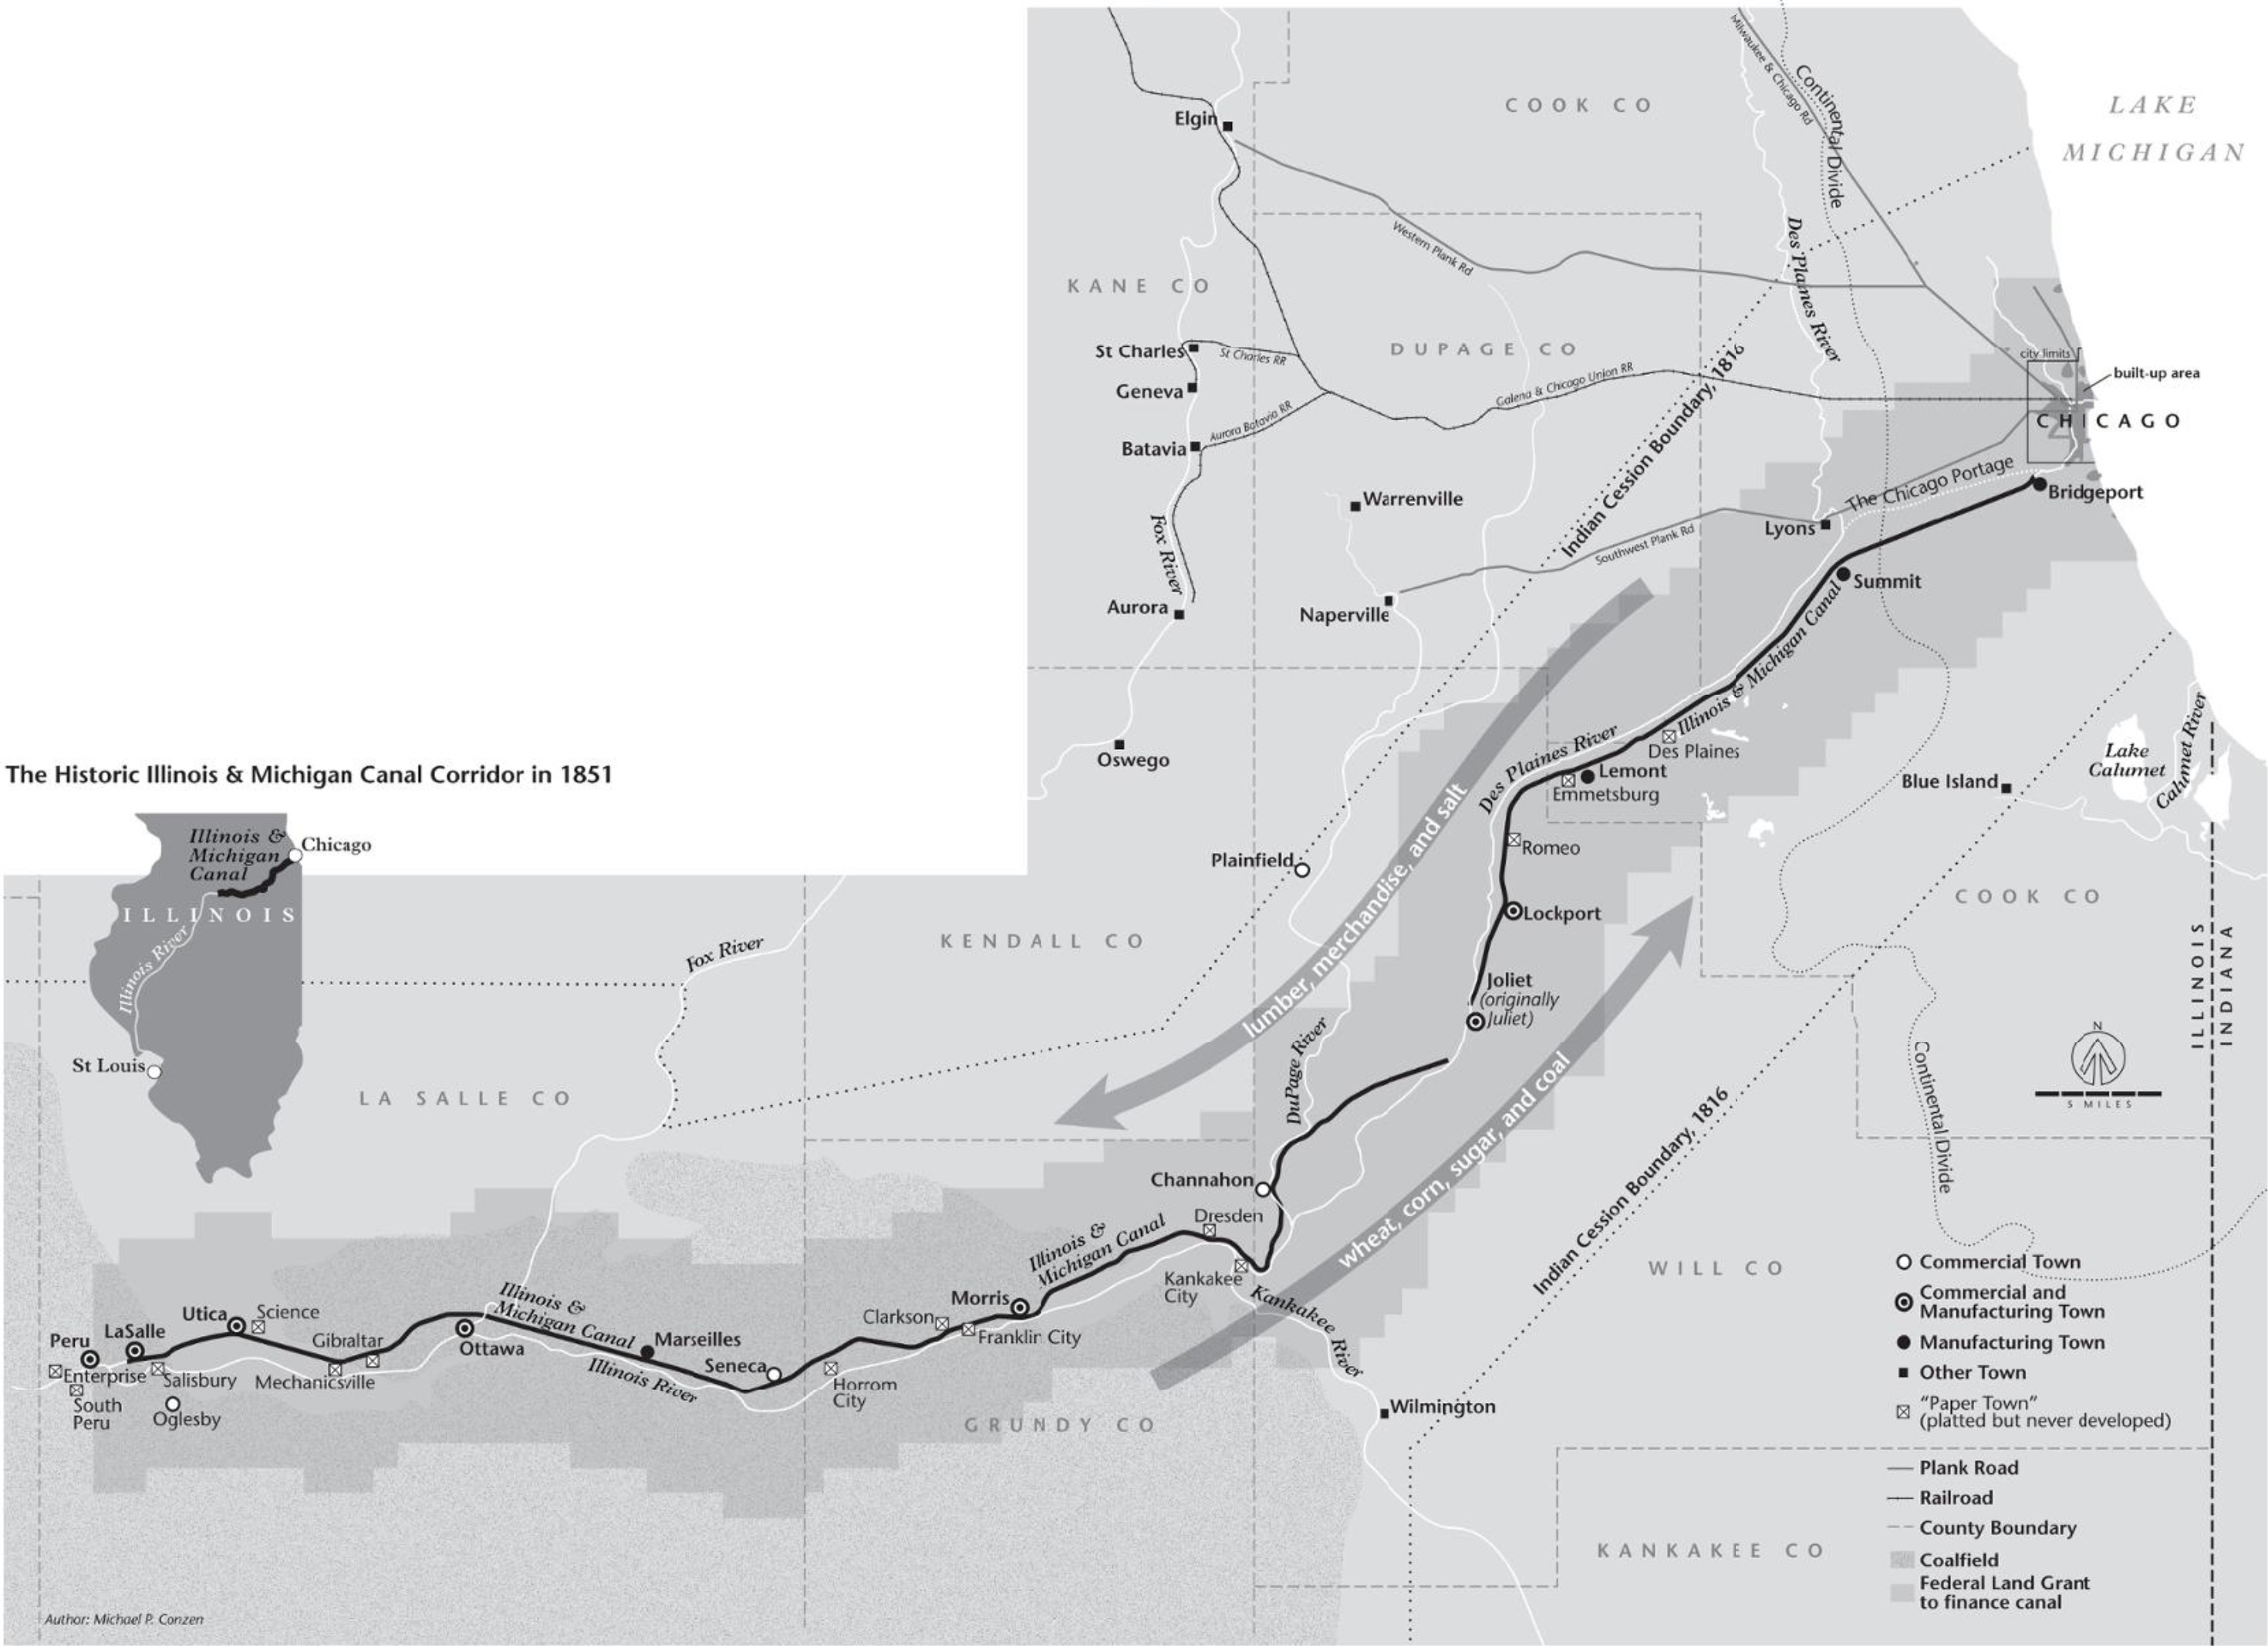 The Historic Illinois & Michigan Canal Corridor, 1851 (via)